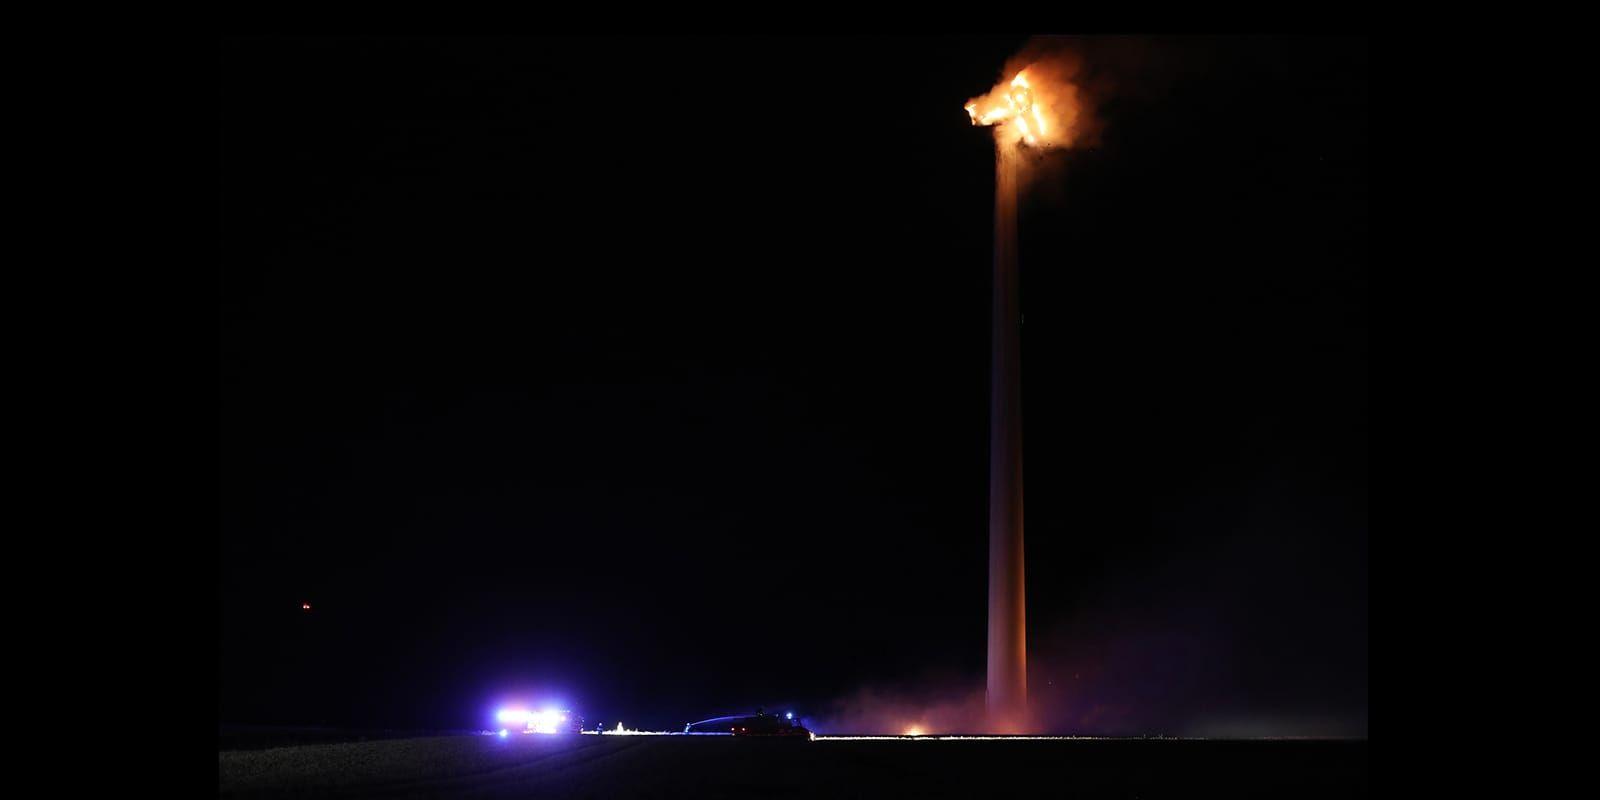 Det brinner i ett vindkraftverk utanför Vara. Bild: Torbjörn Axelsson